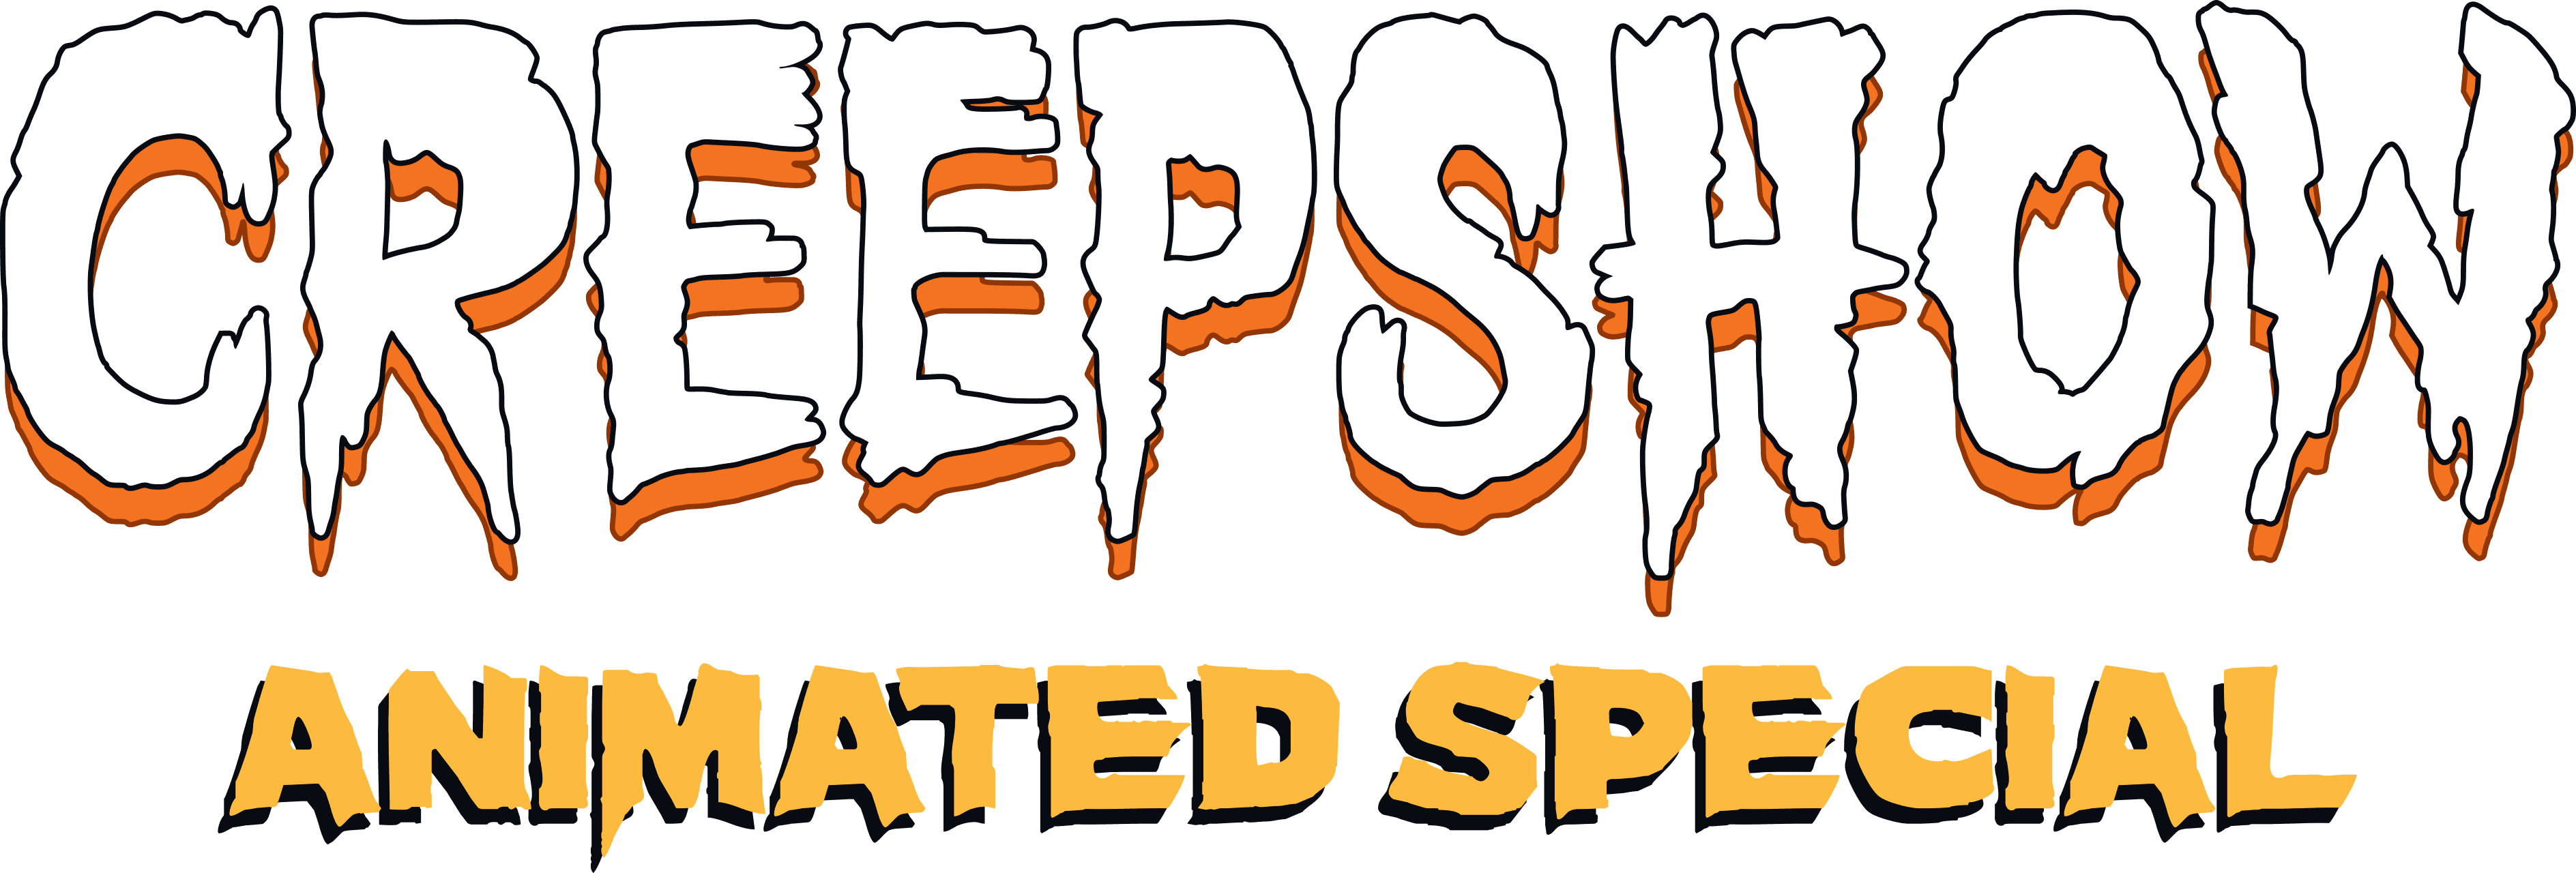 A Creepshow Animated Special logo